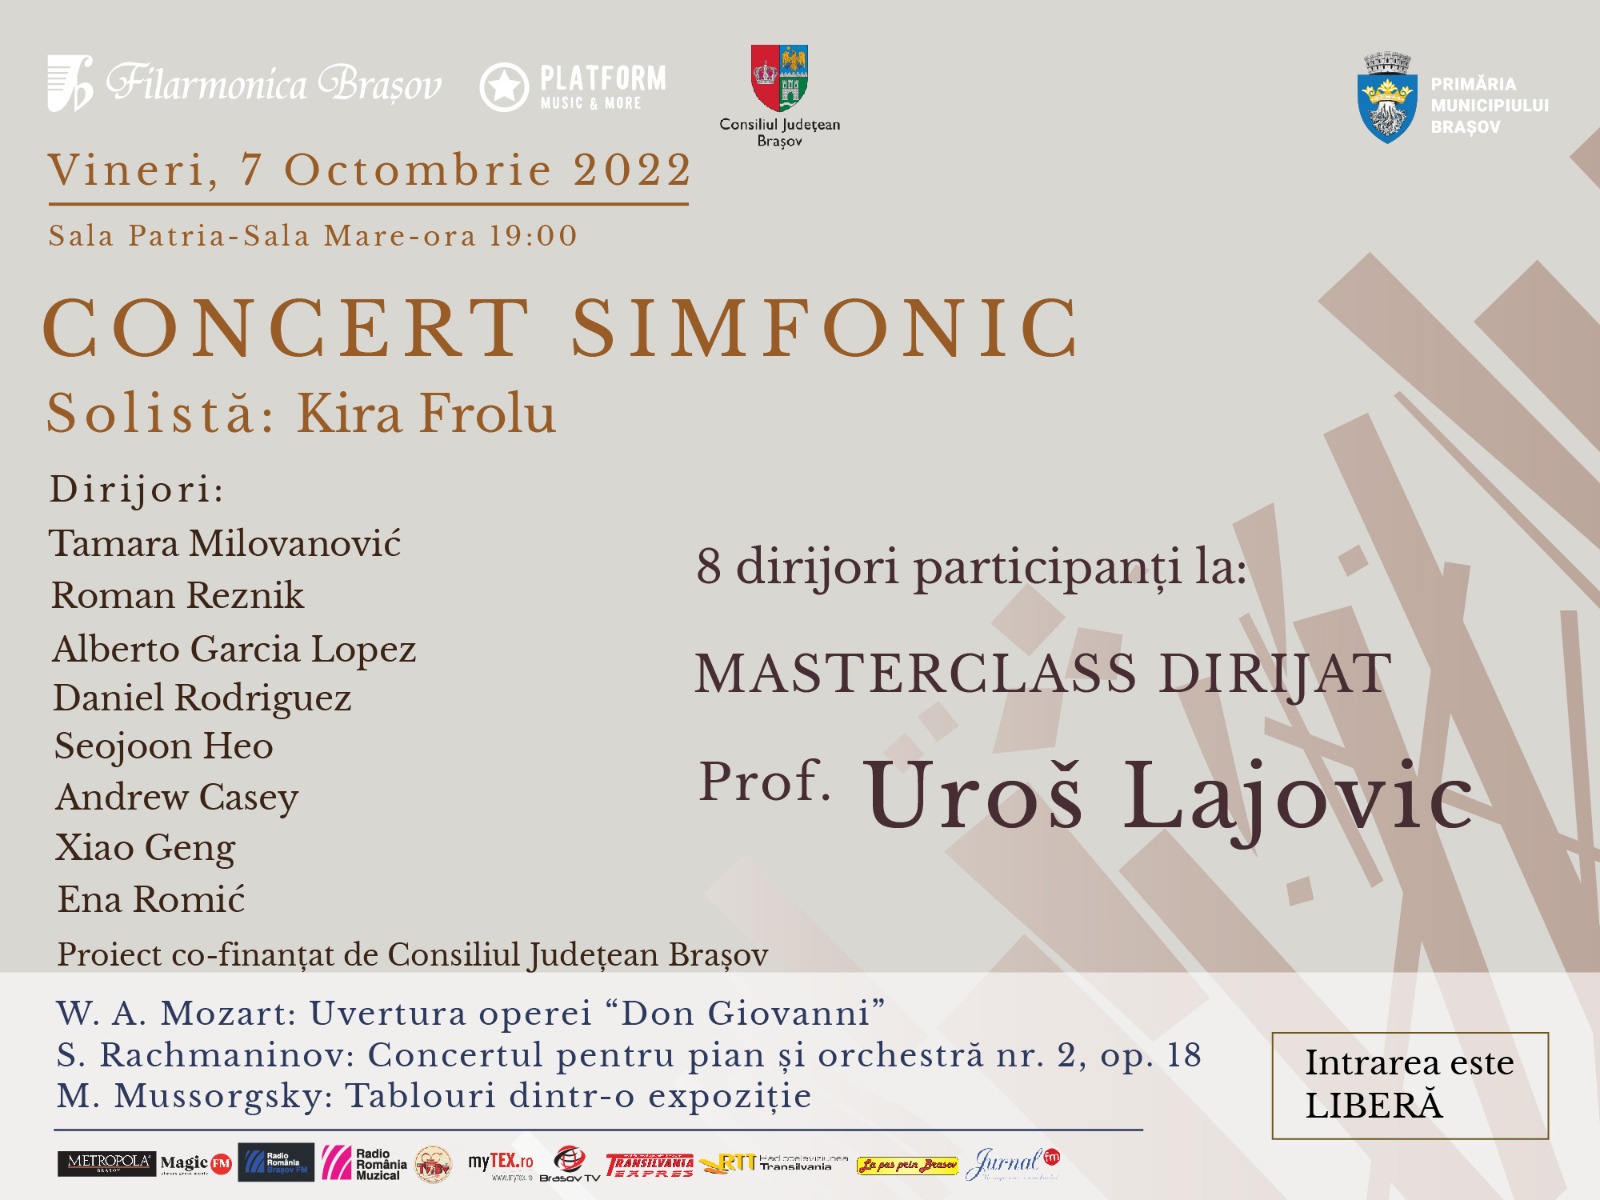 Masterclass internațional de dirijat cu Uroš Lajovic și Filarmonica Brașov